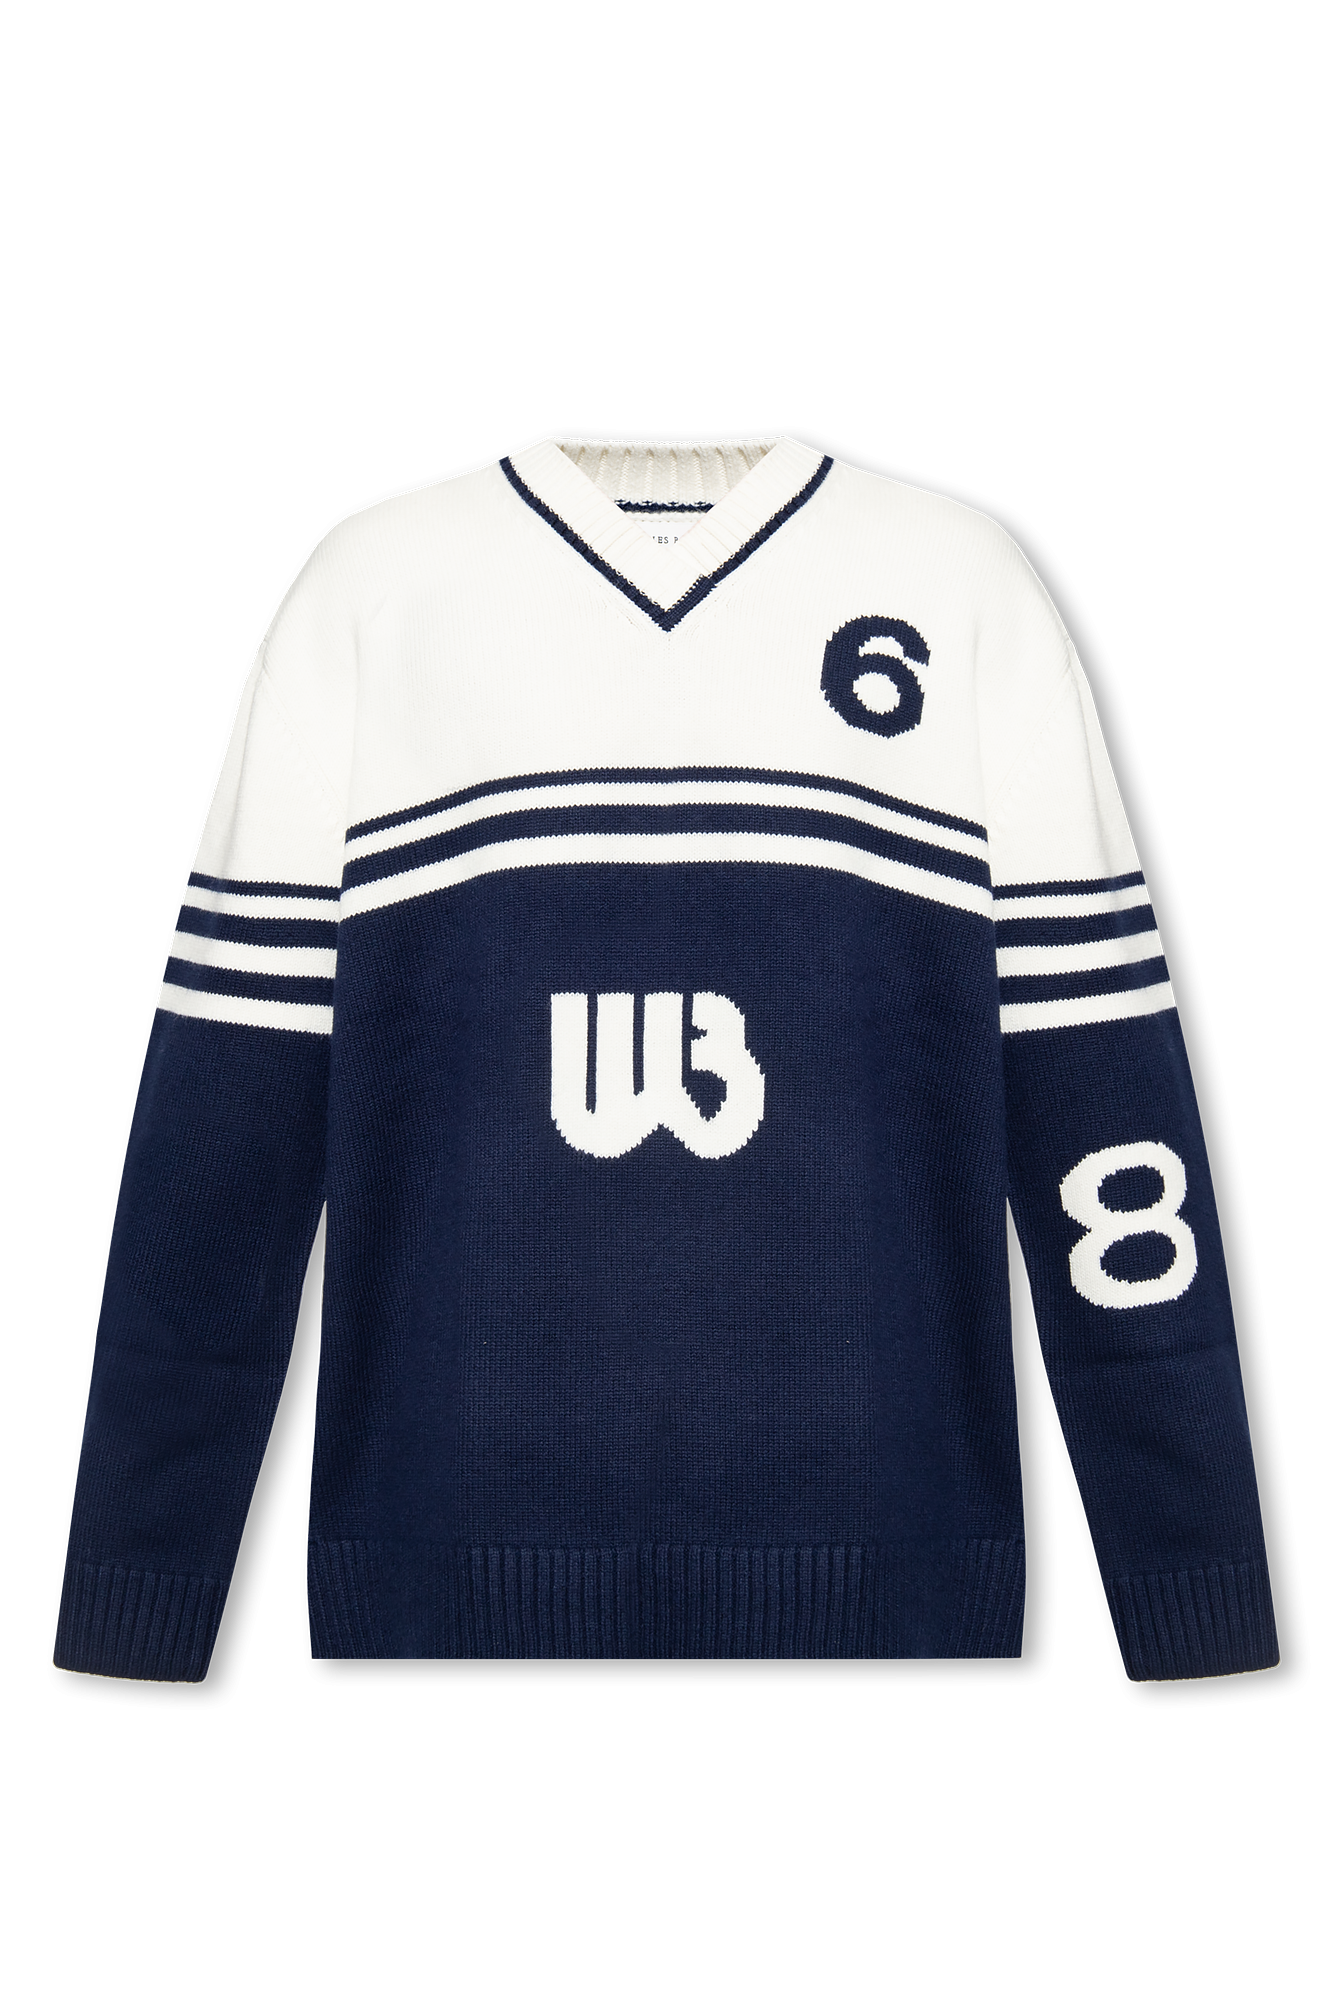 Wales Bonner Wool sweater